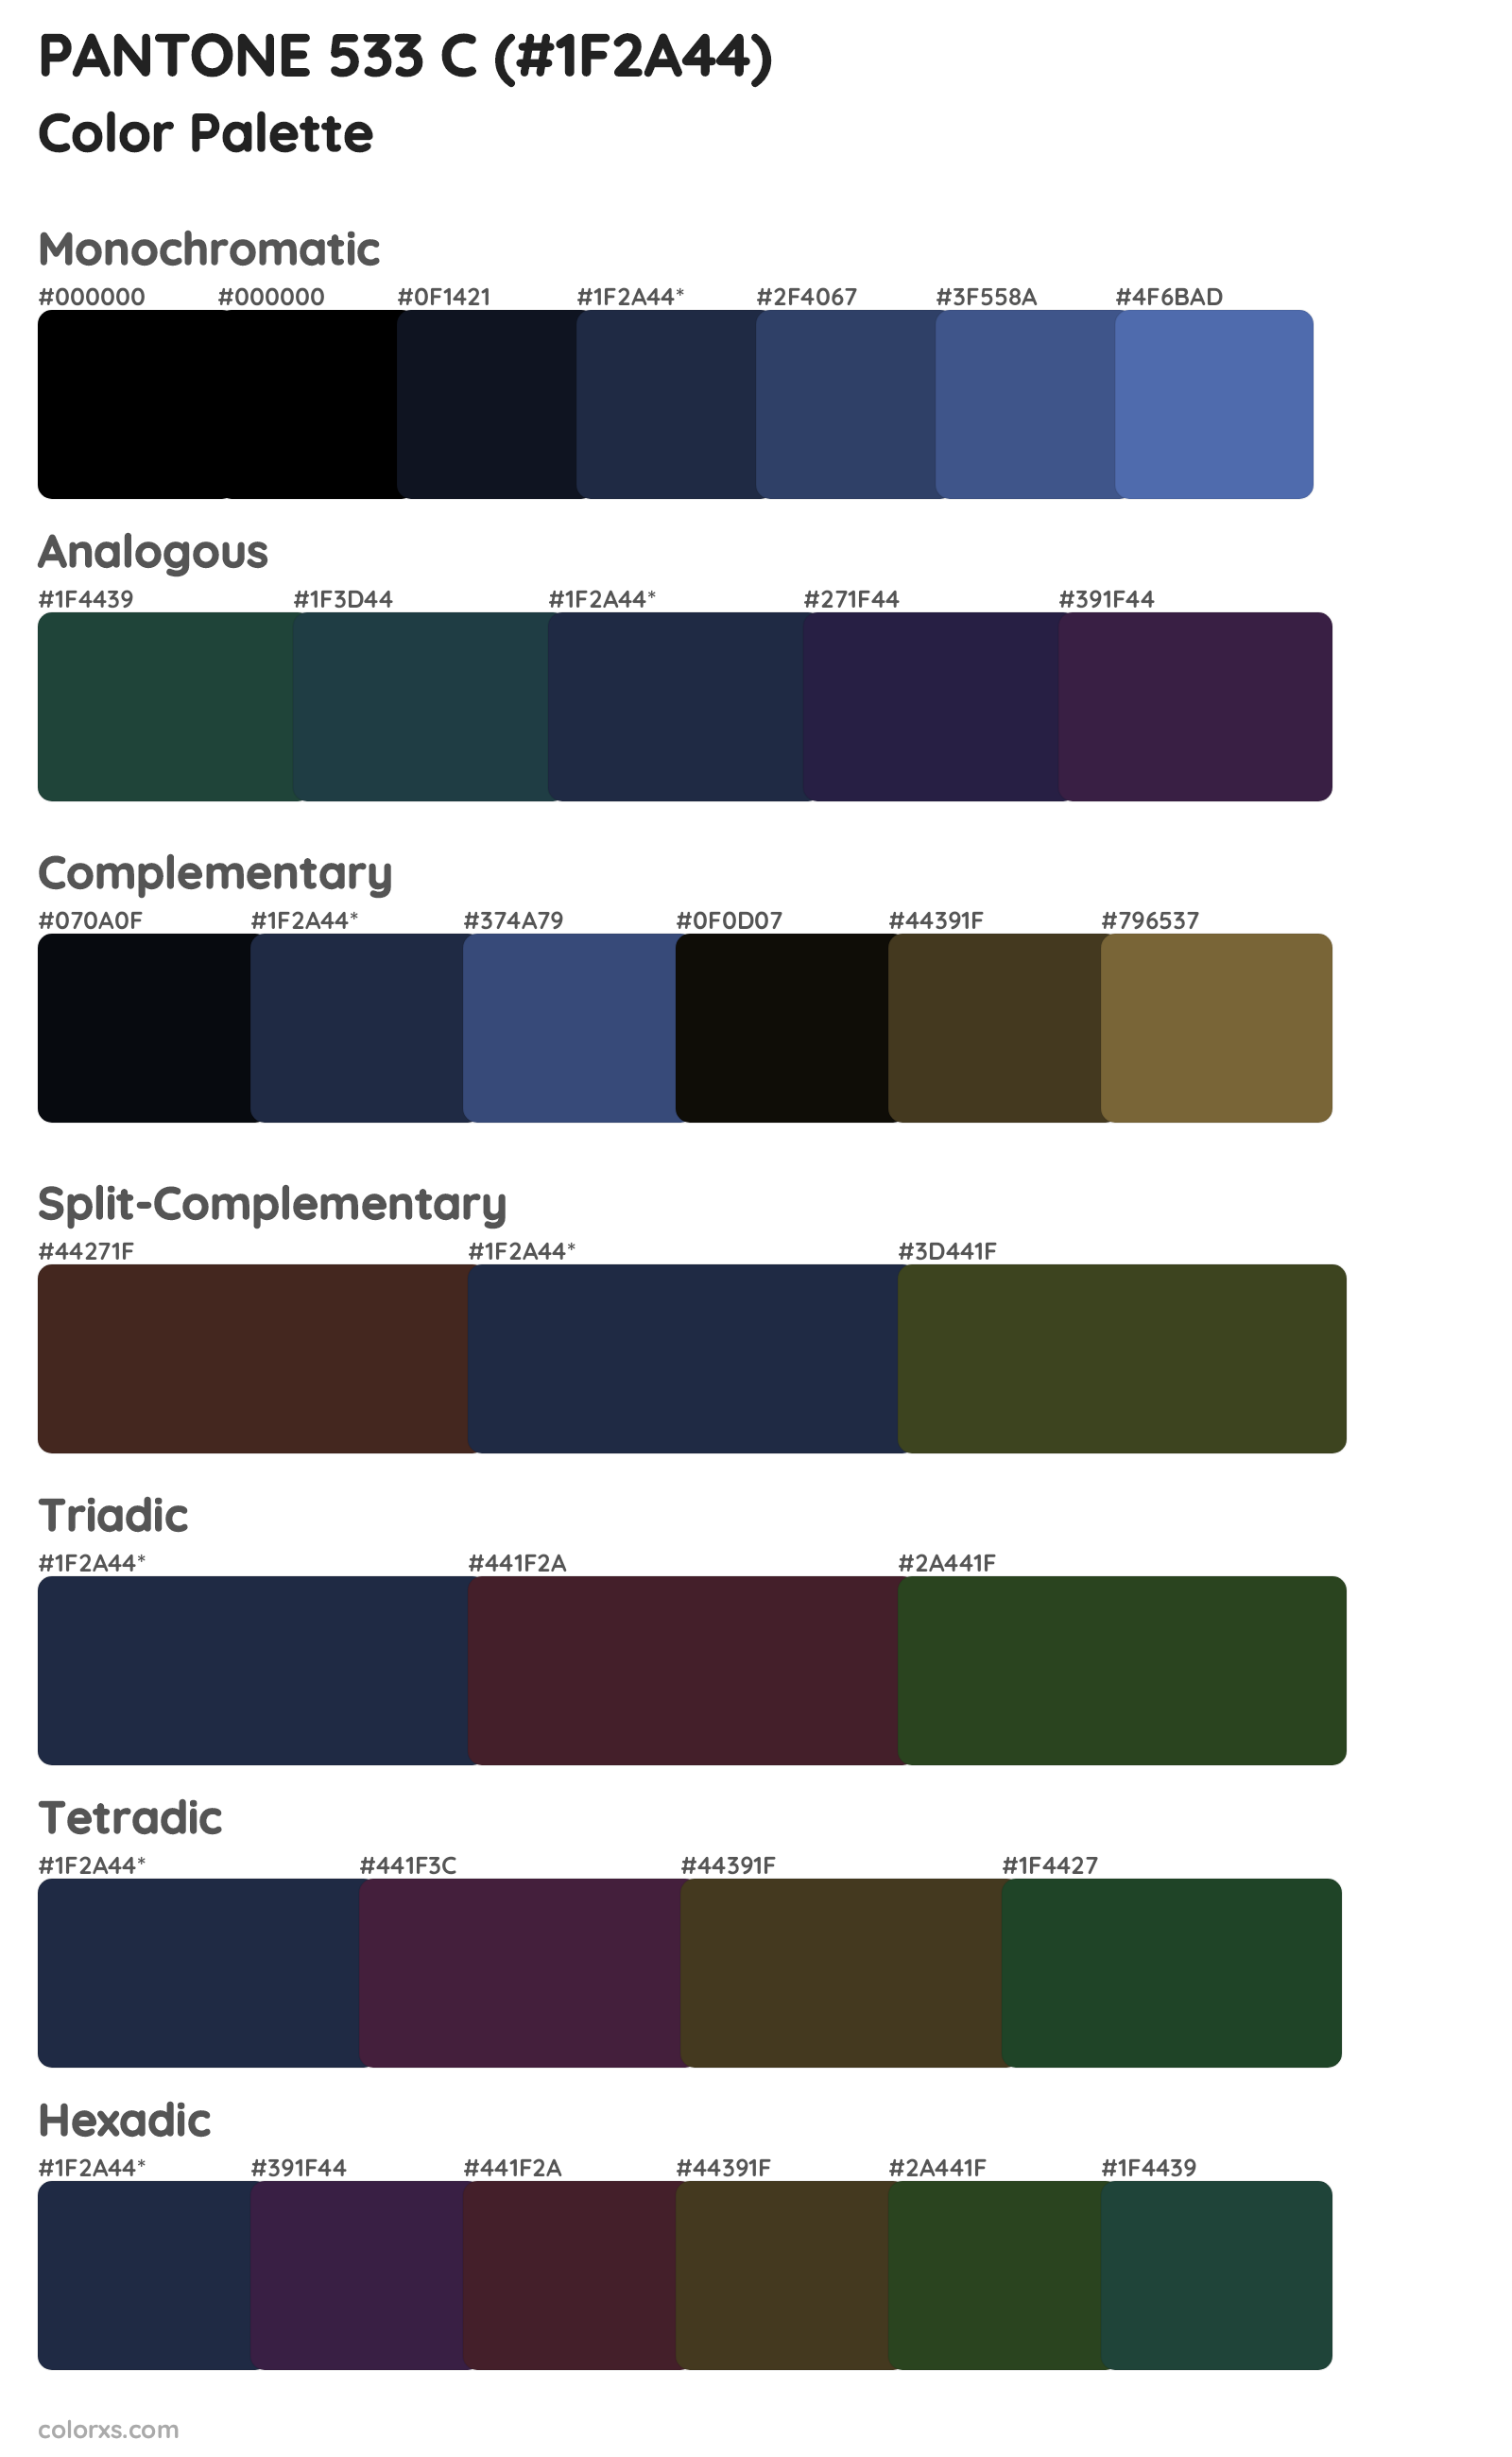 PANTONE 533 C Color Scheme Palettes